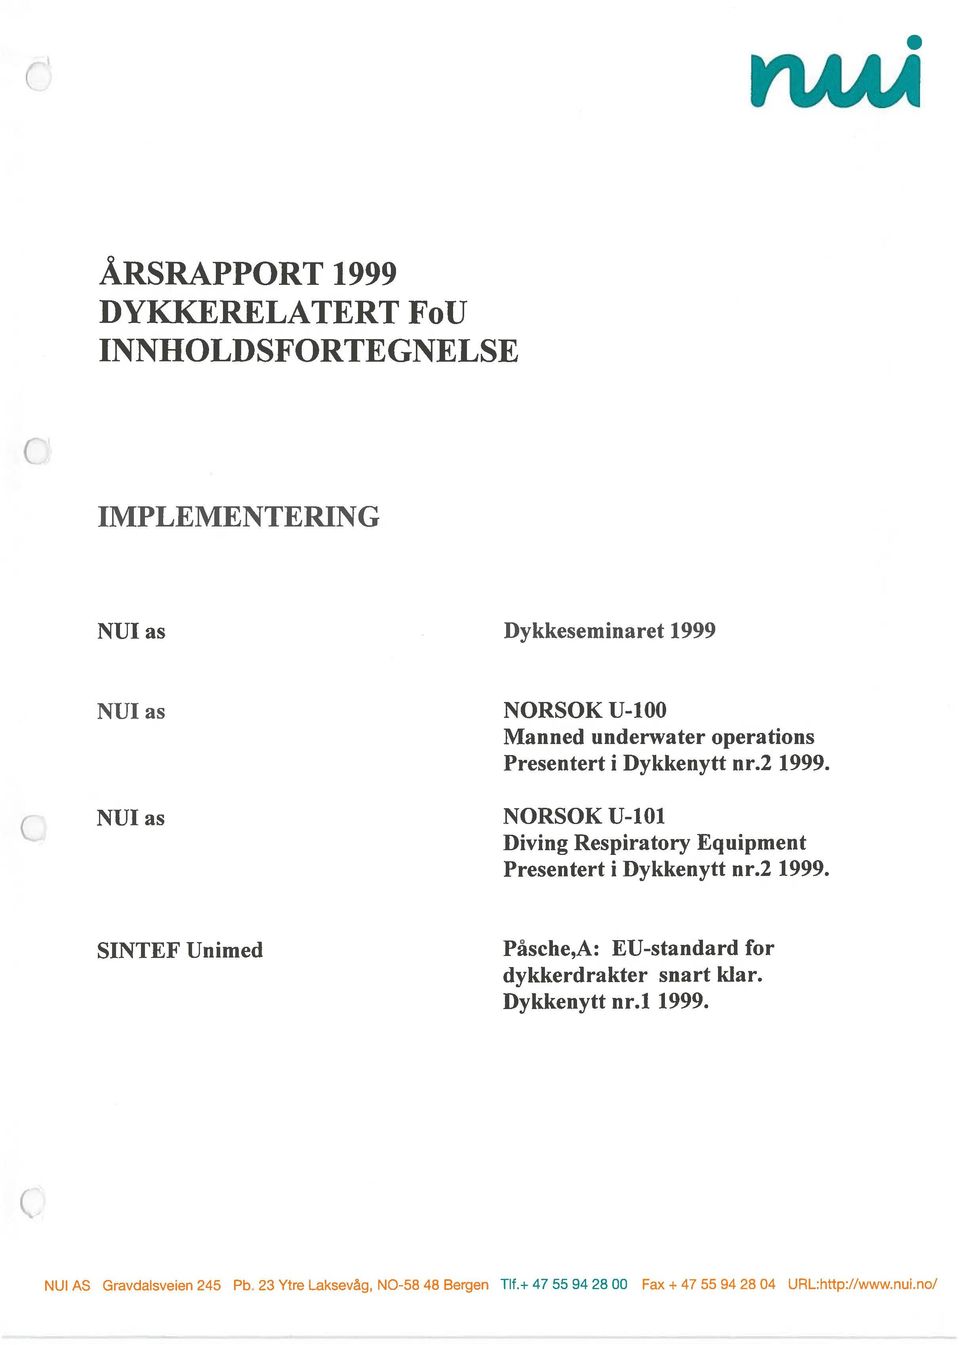 NUI as NORSOK U-1O1 Diving Respiratory Equipment Presentert i Dykkenytt nr.2 1999.